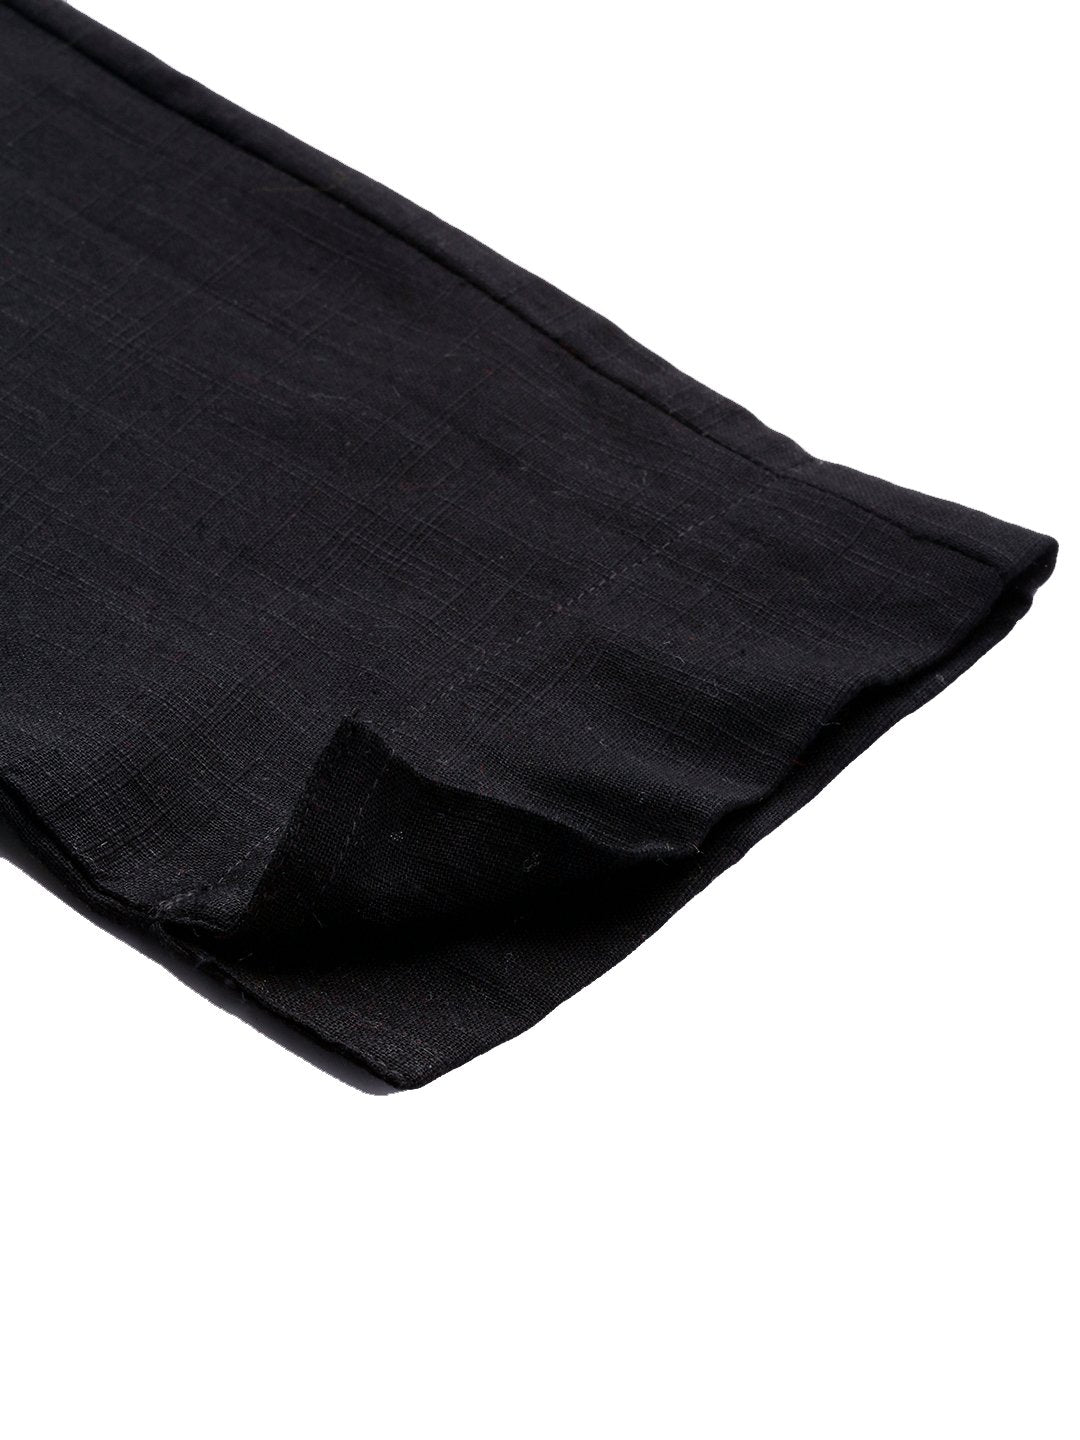 Women's Black Cotton Trouser - Divena